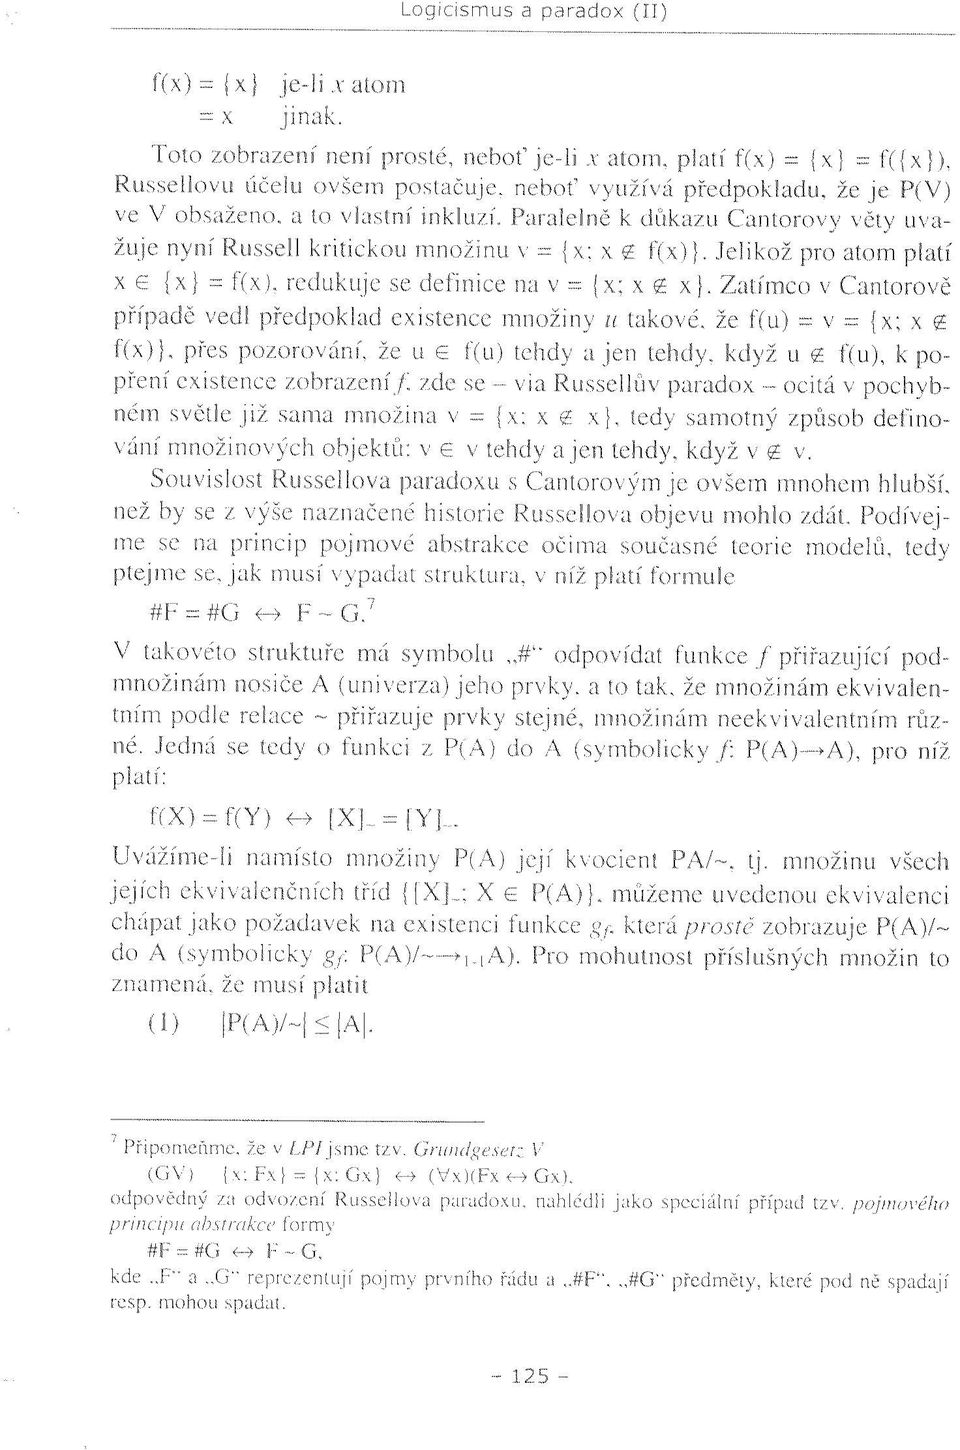 Paralelně k důkazu Cantorovy věty uvažuje nyní Russell kritickou množinu v = {x; x ř f(x)}. Jelikož pro atom platí x e {x} = f(x), redukuje se definicenav= jx;xí x}.